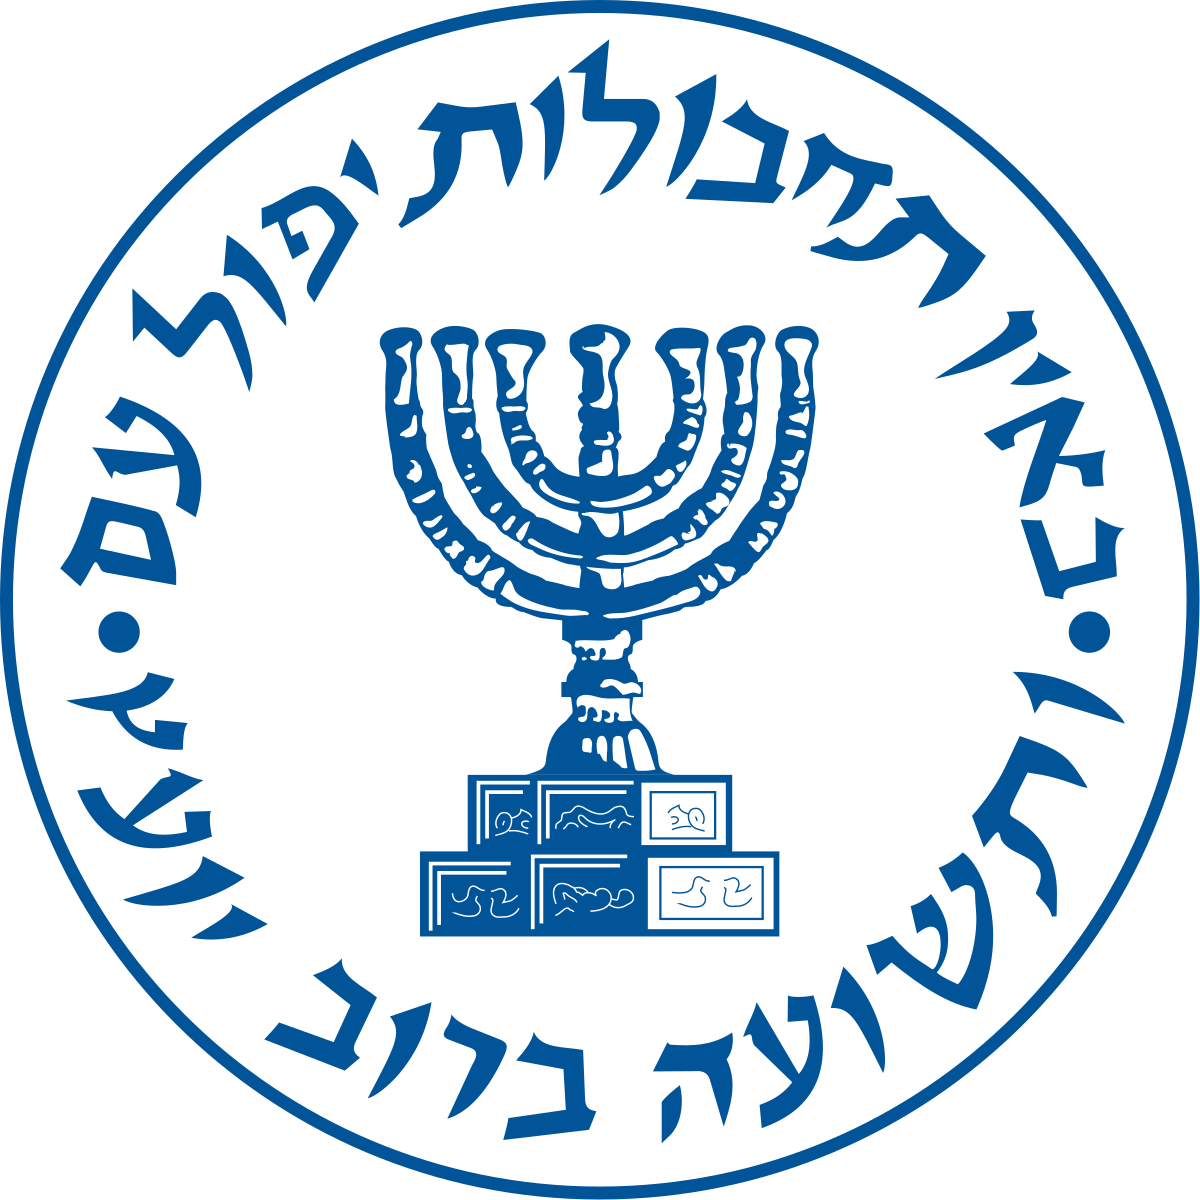 Mossad Wikipedia